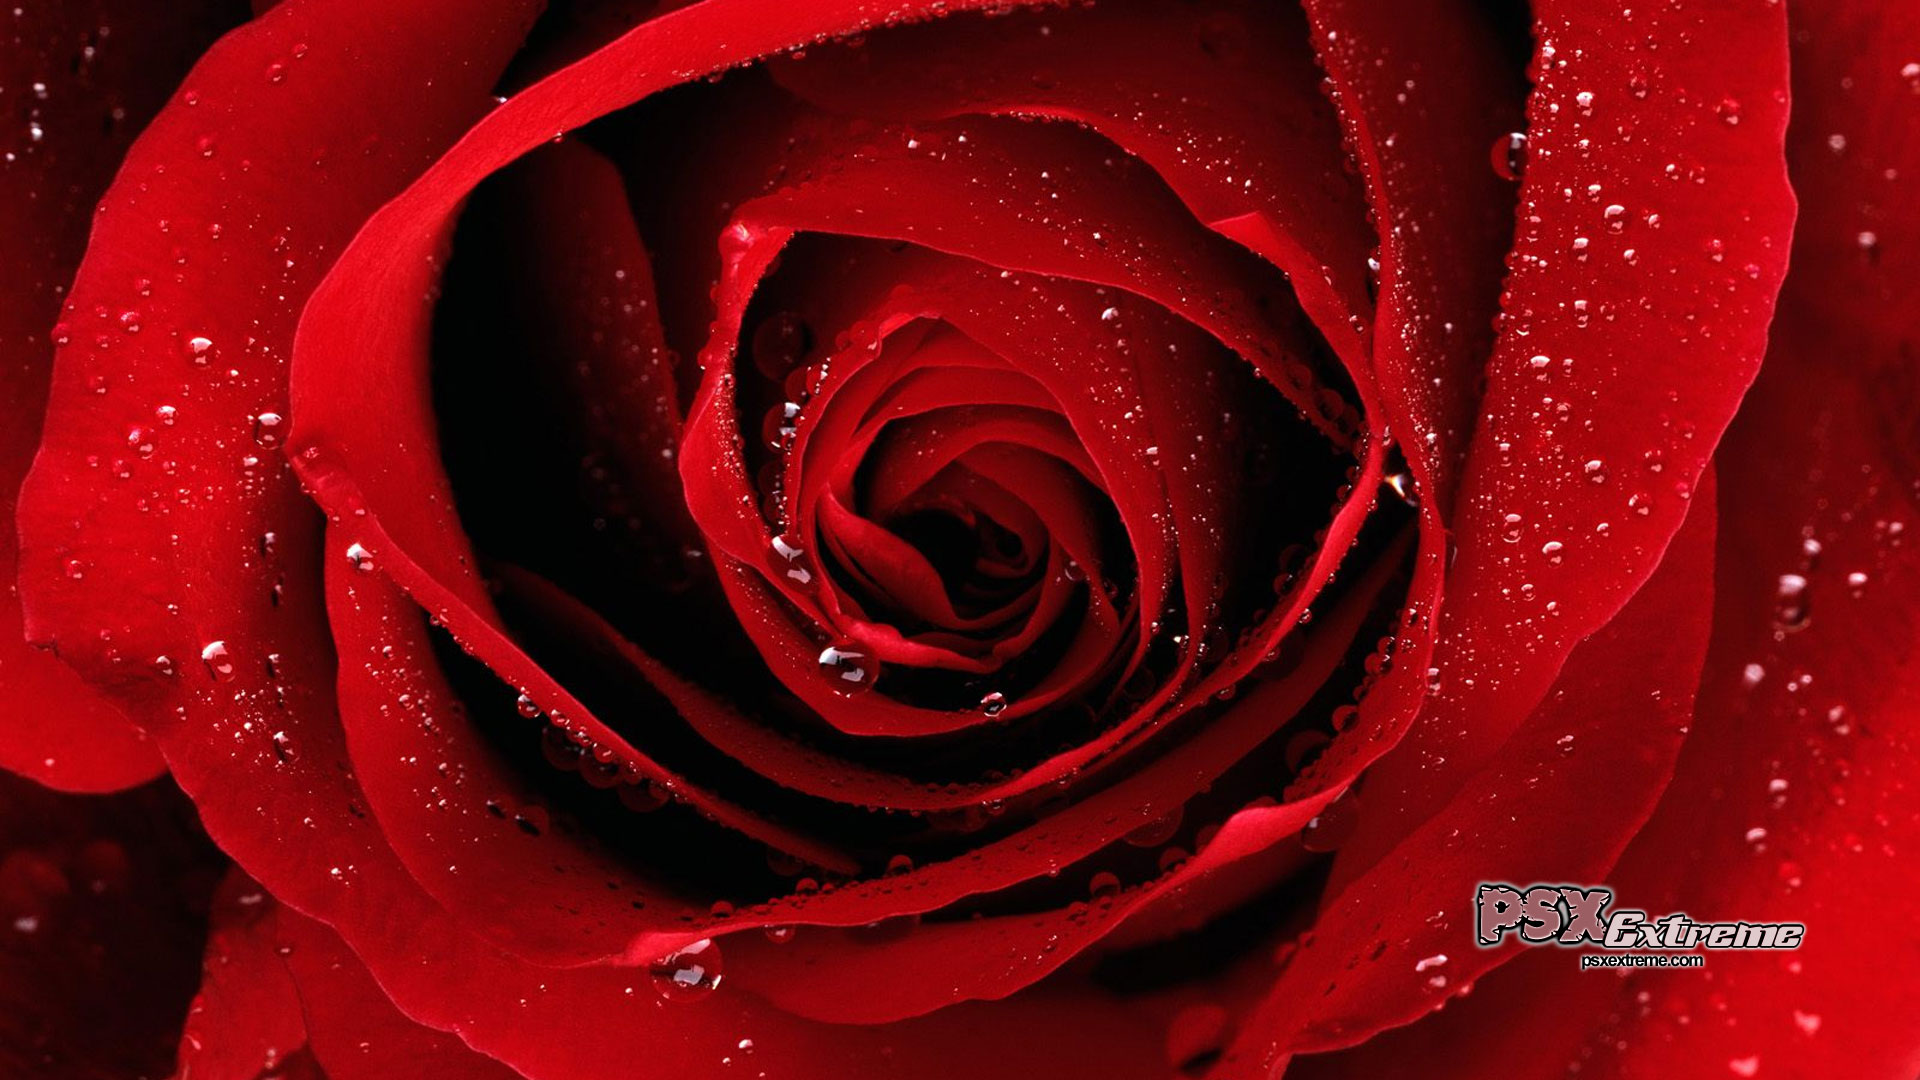 Beautiful Red Rose Wallpaper Colors